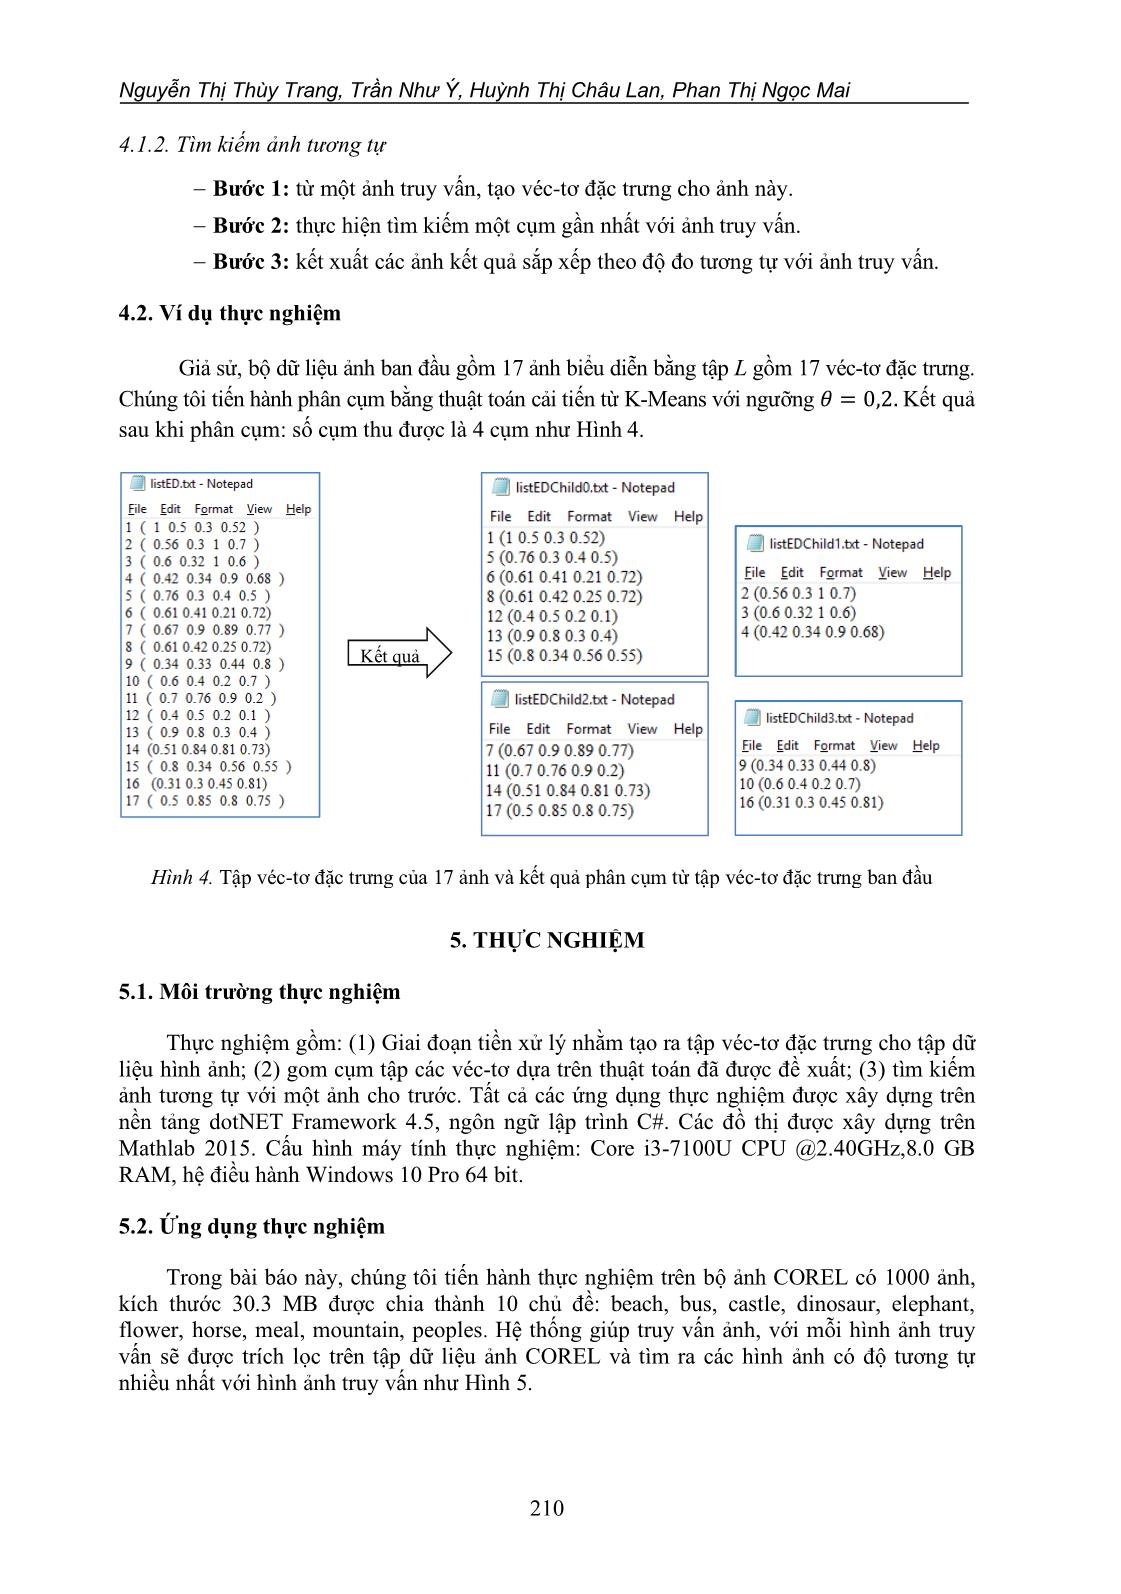 Một phương pháp gom cụm dữ liệu cho bài toán tìm kiếm ảnh trang 9